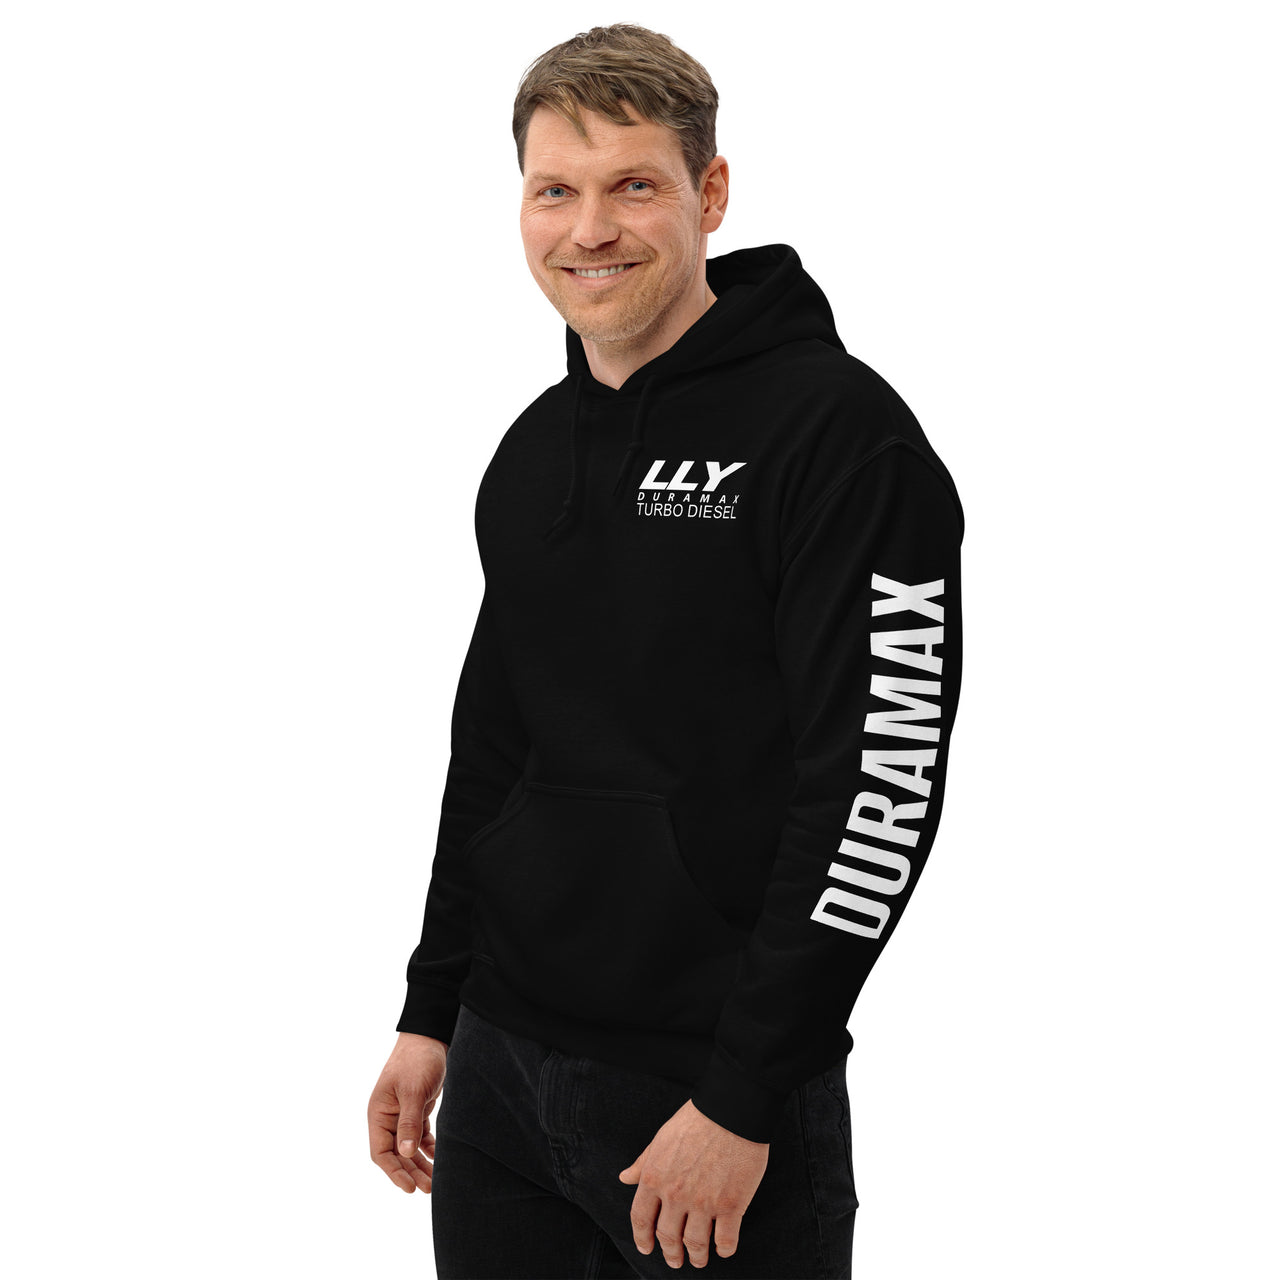 LLY Duramax Hoodie Pullover Sweatshirt With Sleeve Print modeled in black